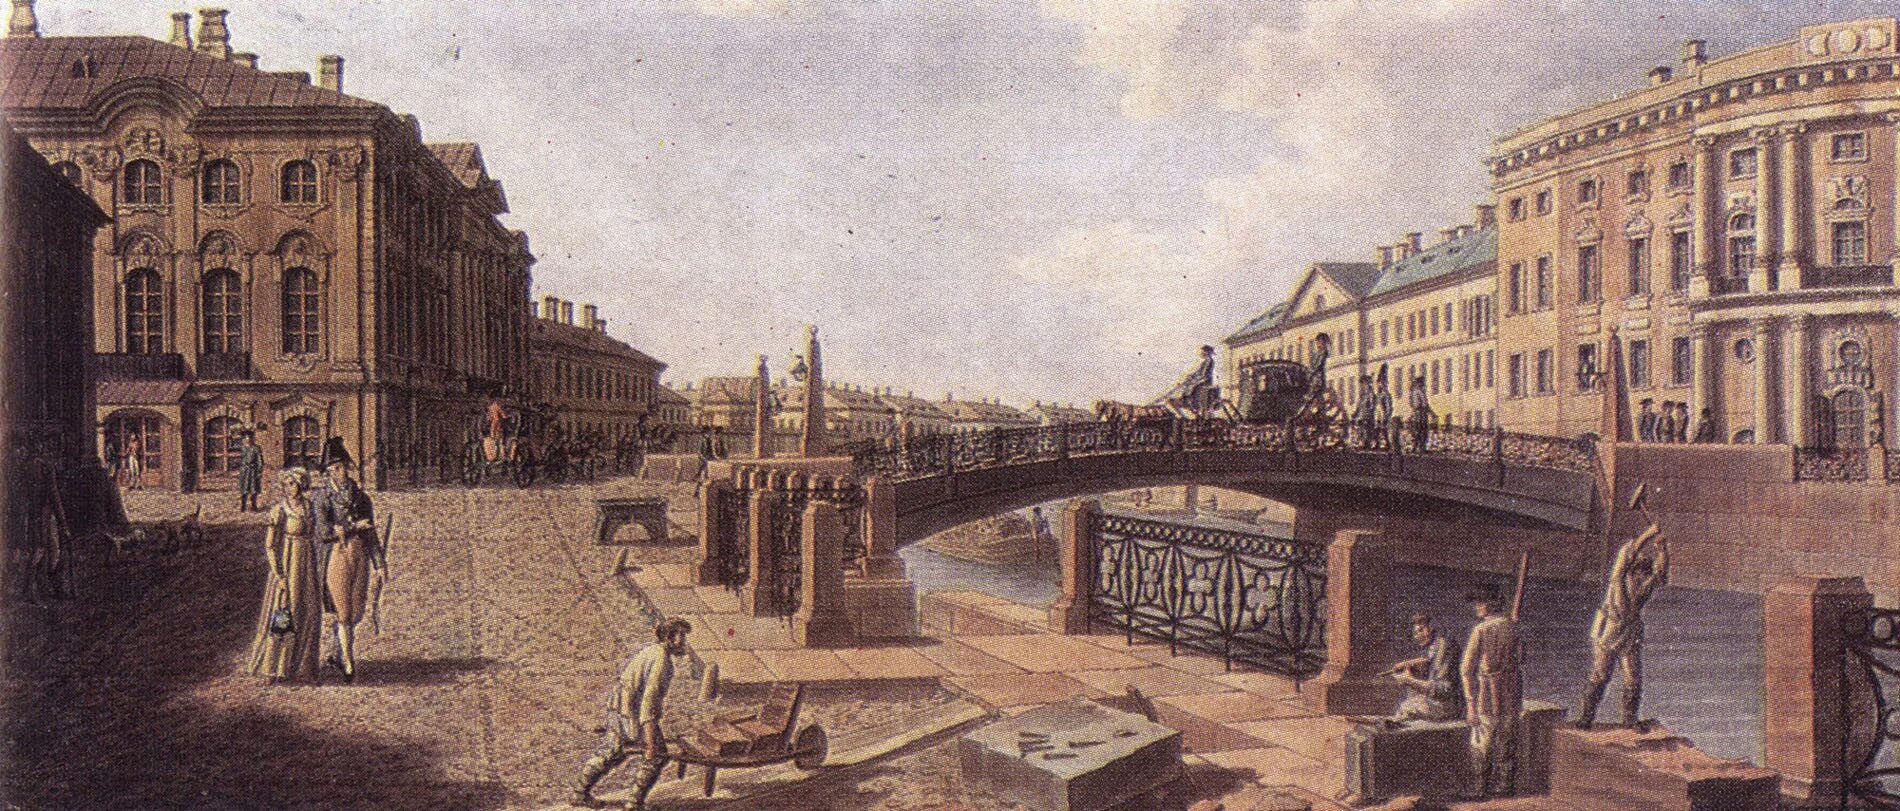 Санкт петербург в начале 18 века. Екатерининский канал Санкт-Петербург 19 век.